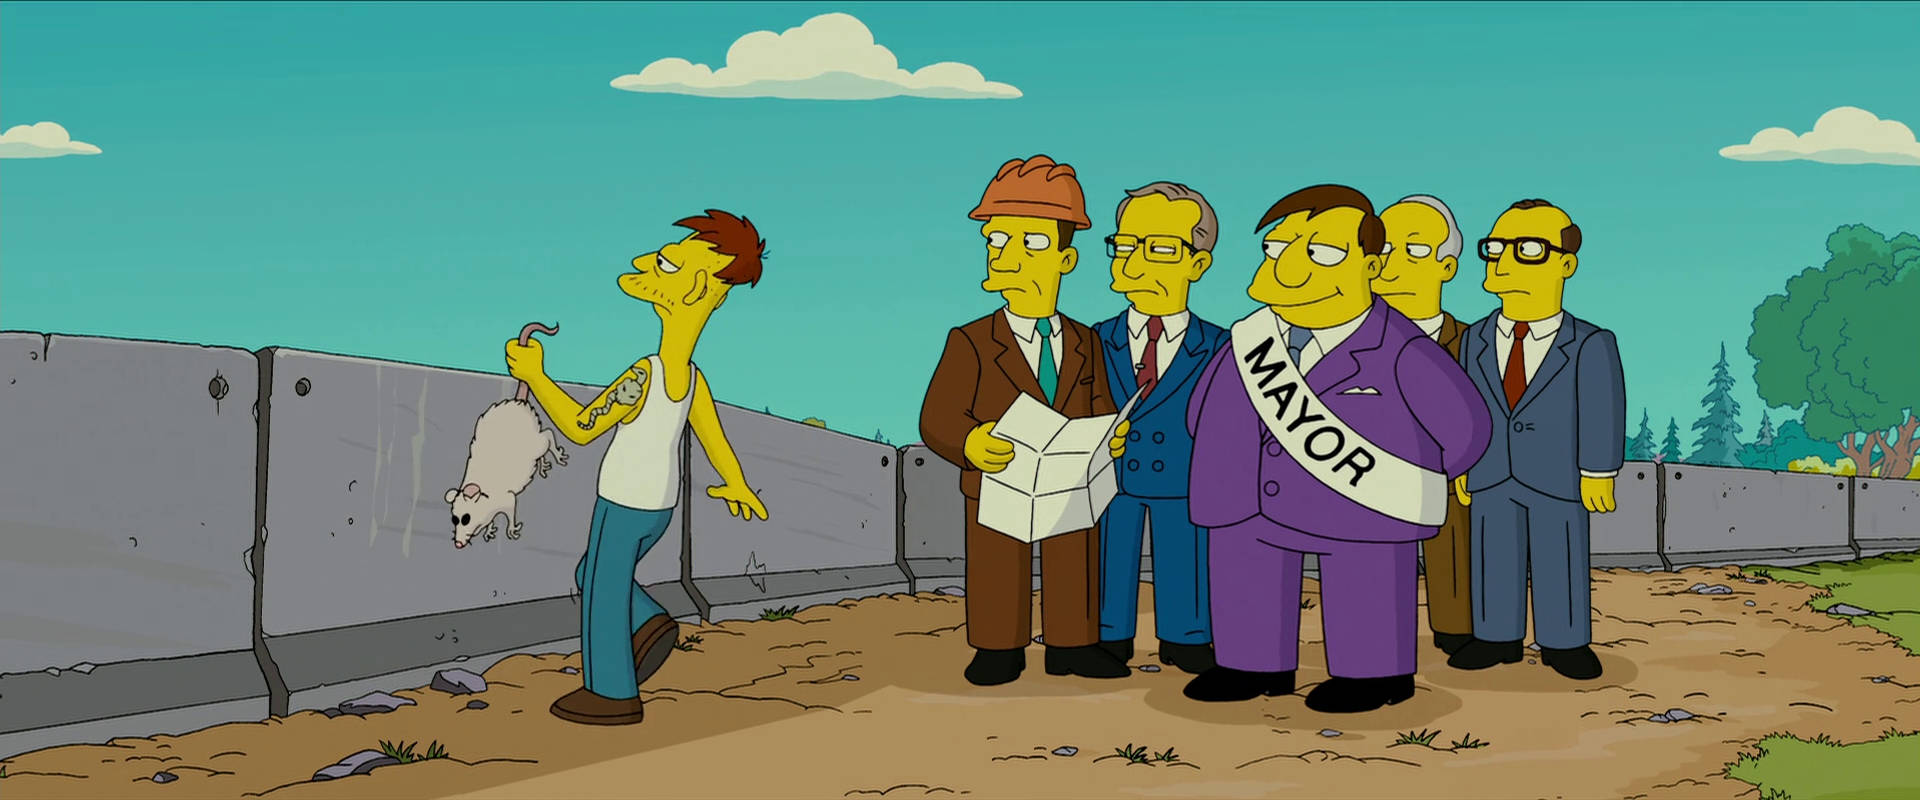 Borgmästarenfrån Simpsonsfilmen. Wallpaper